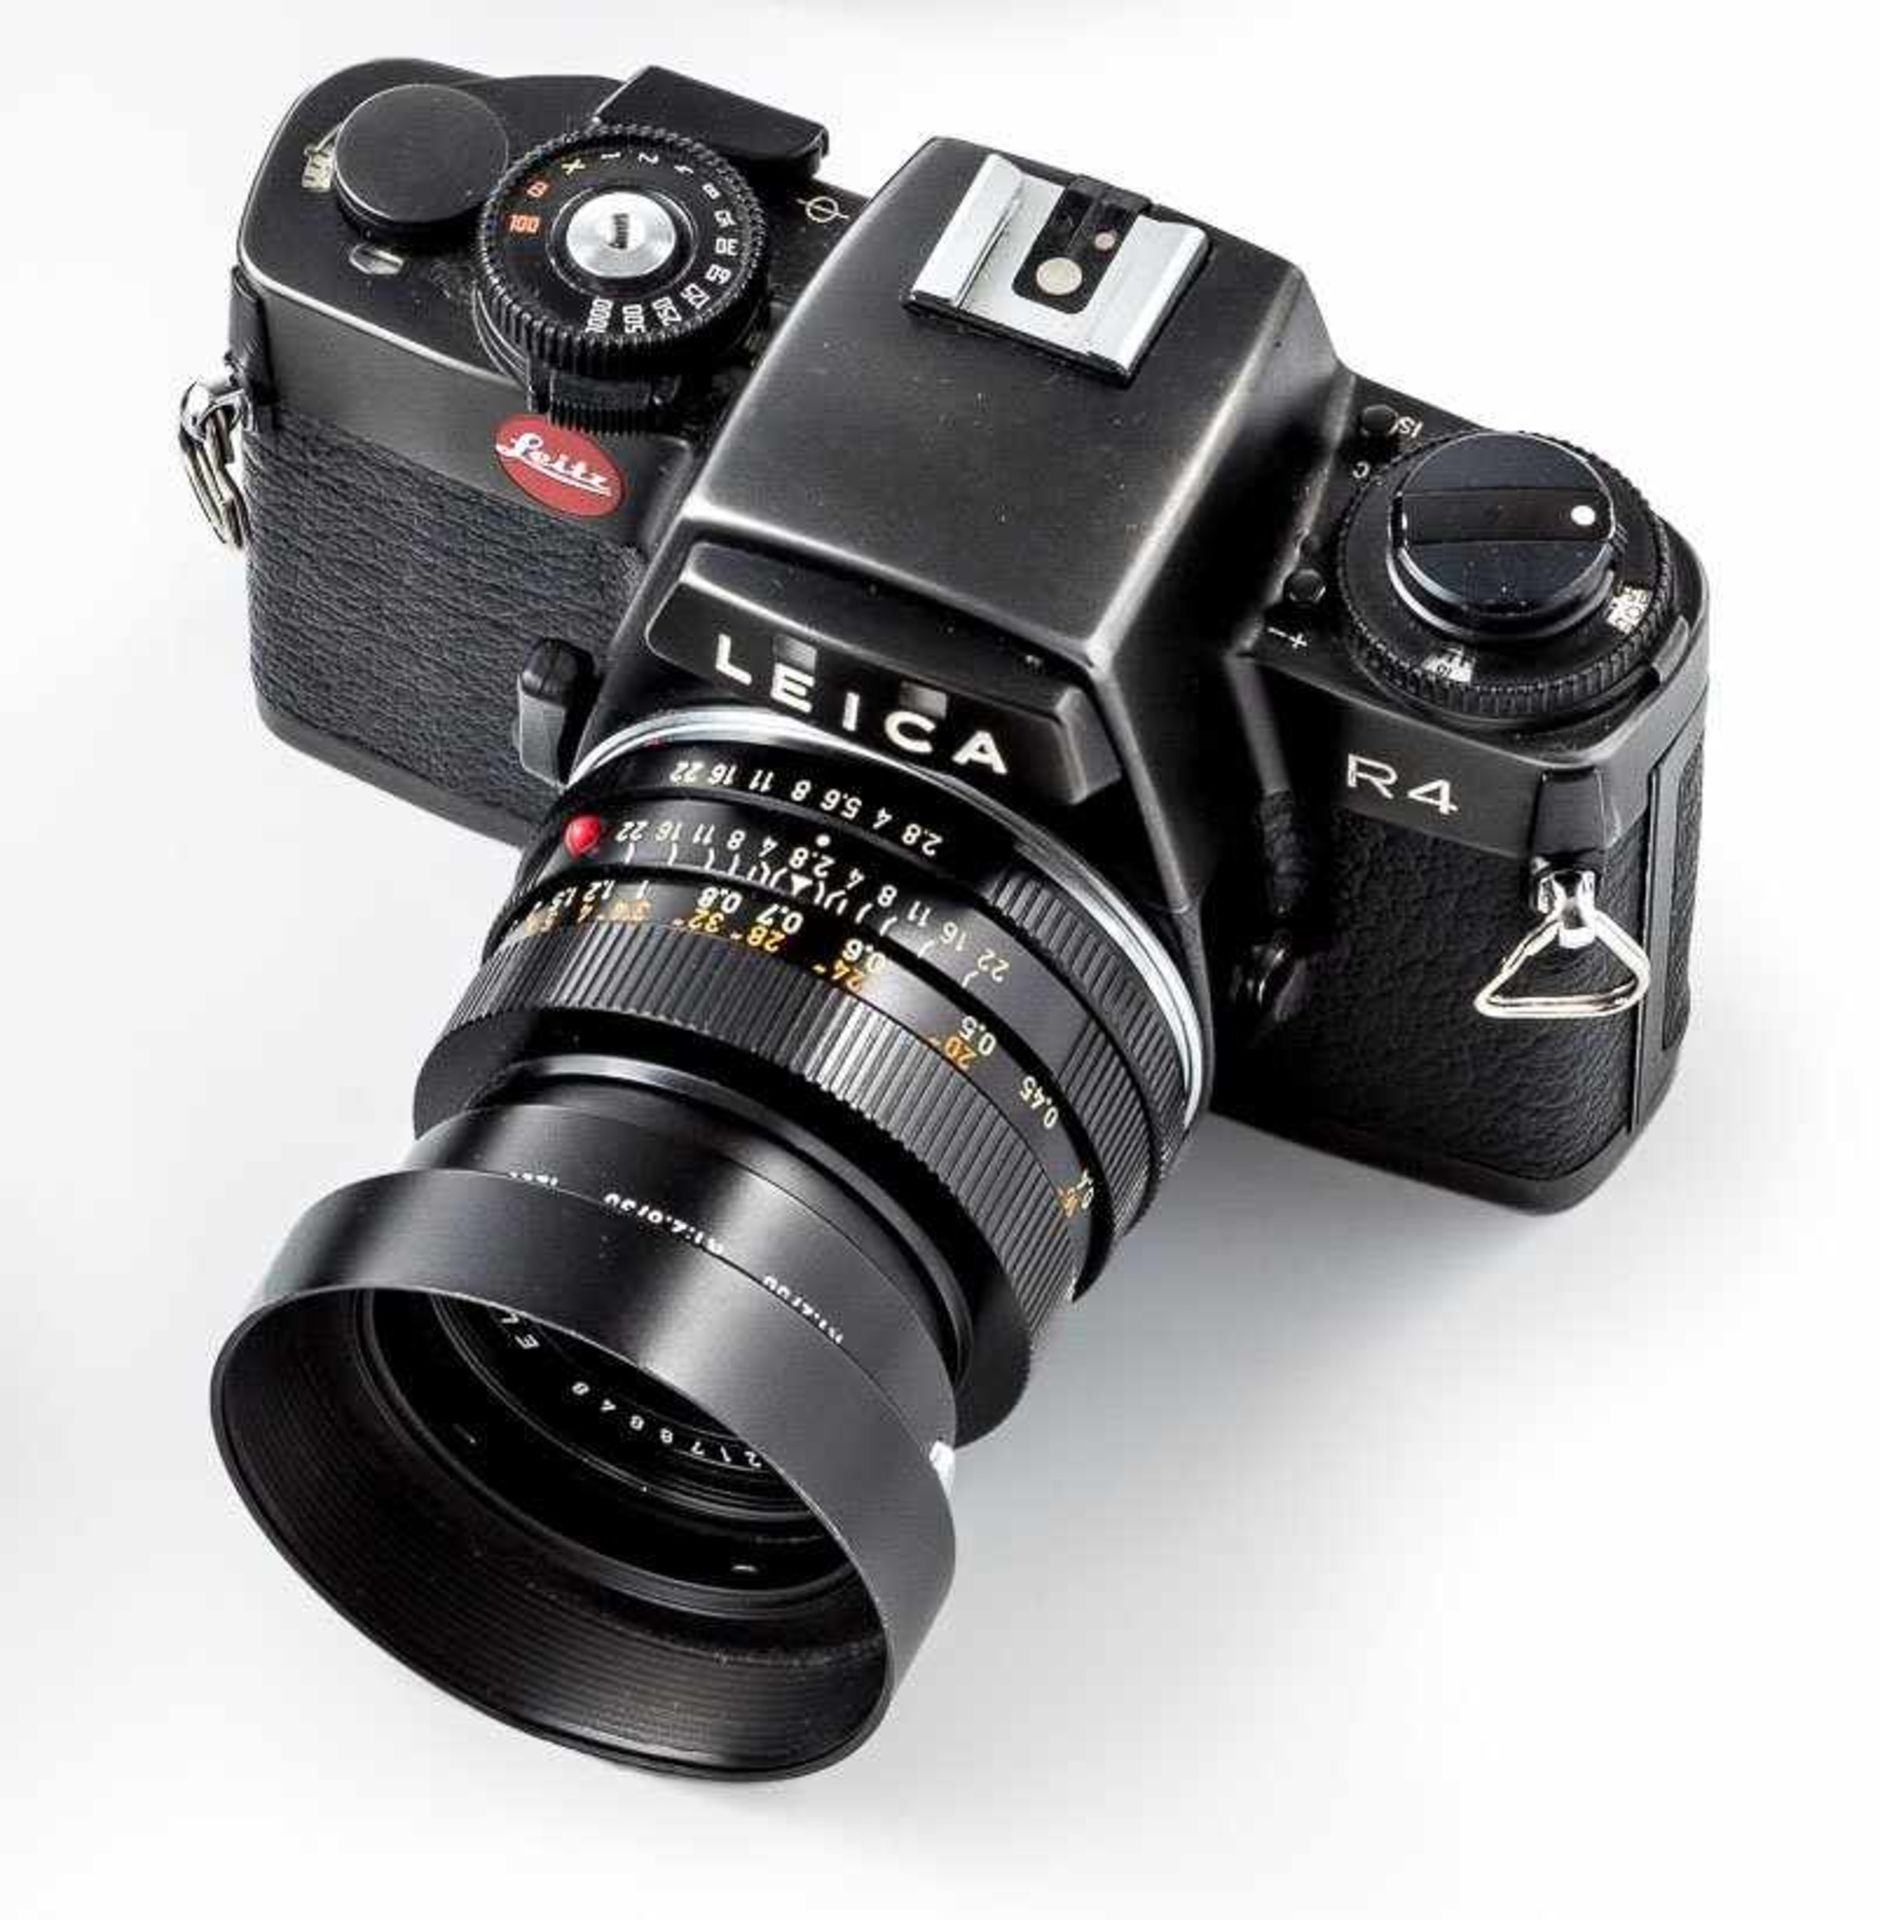 Spiegelreflexkamera Leica R4Made by Leitz Portugal. Analog. Serien-Nr. 1555 792. Schwarzes